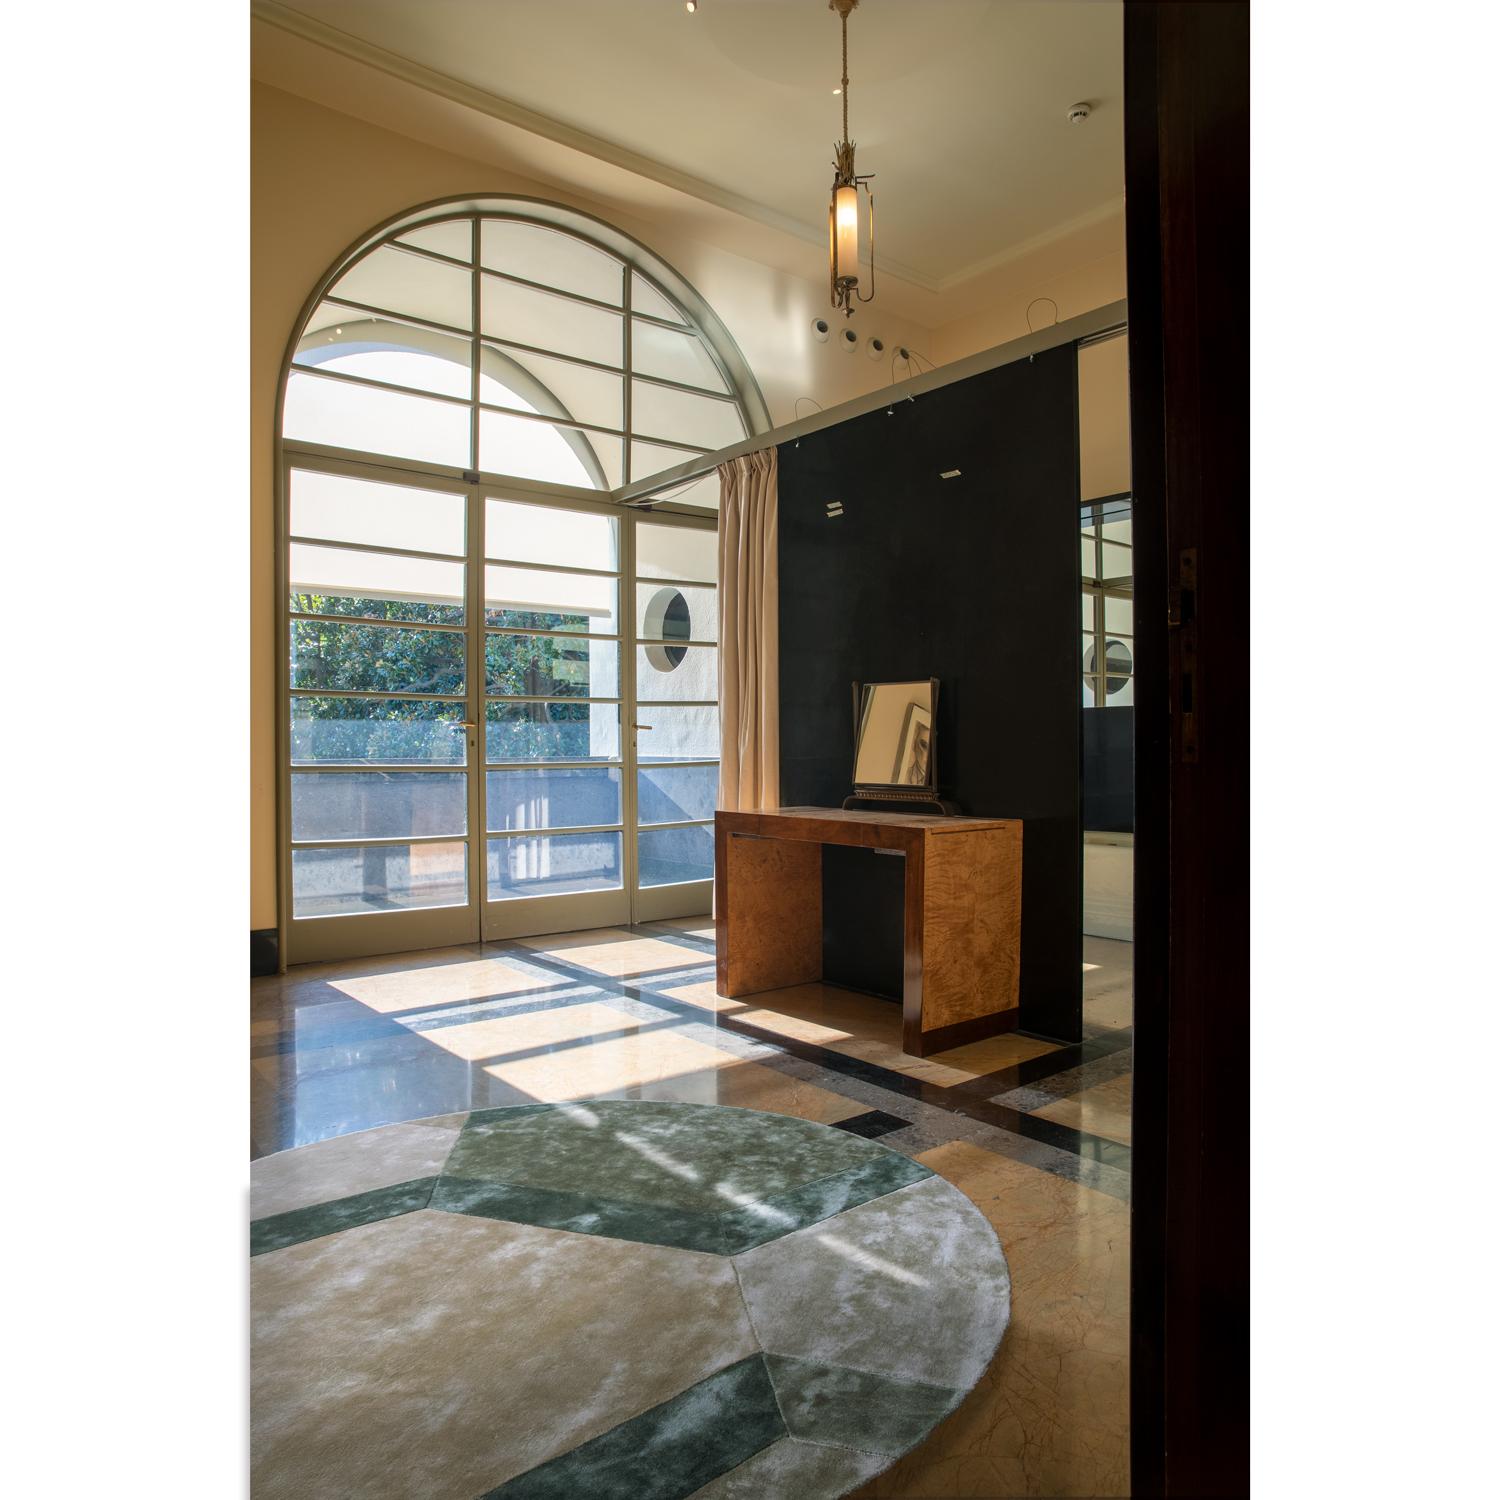 Cobblestone est un tapis végétalien, durable et contemporain de la société de design italienne G.T. DESIGN, pionnière dans le secteur des tapis contemporains. 

Ce tapis circulaire est tissé avec un motif spécial en forme de brique, inspiré du